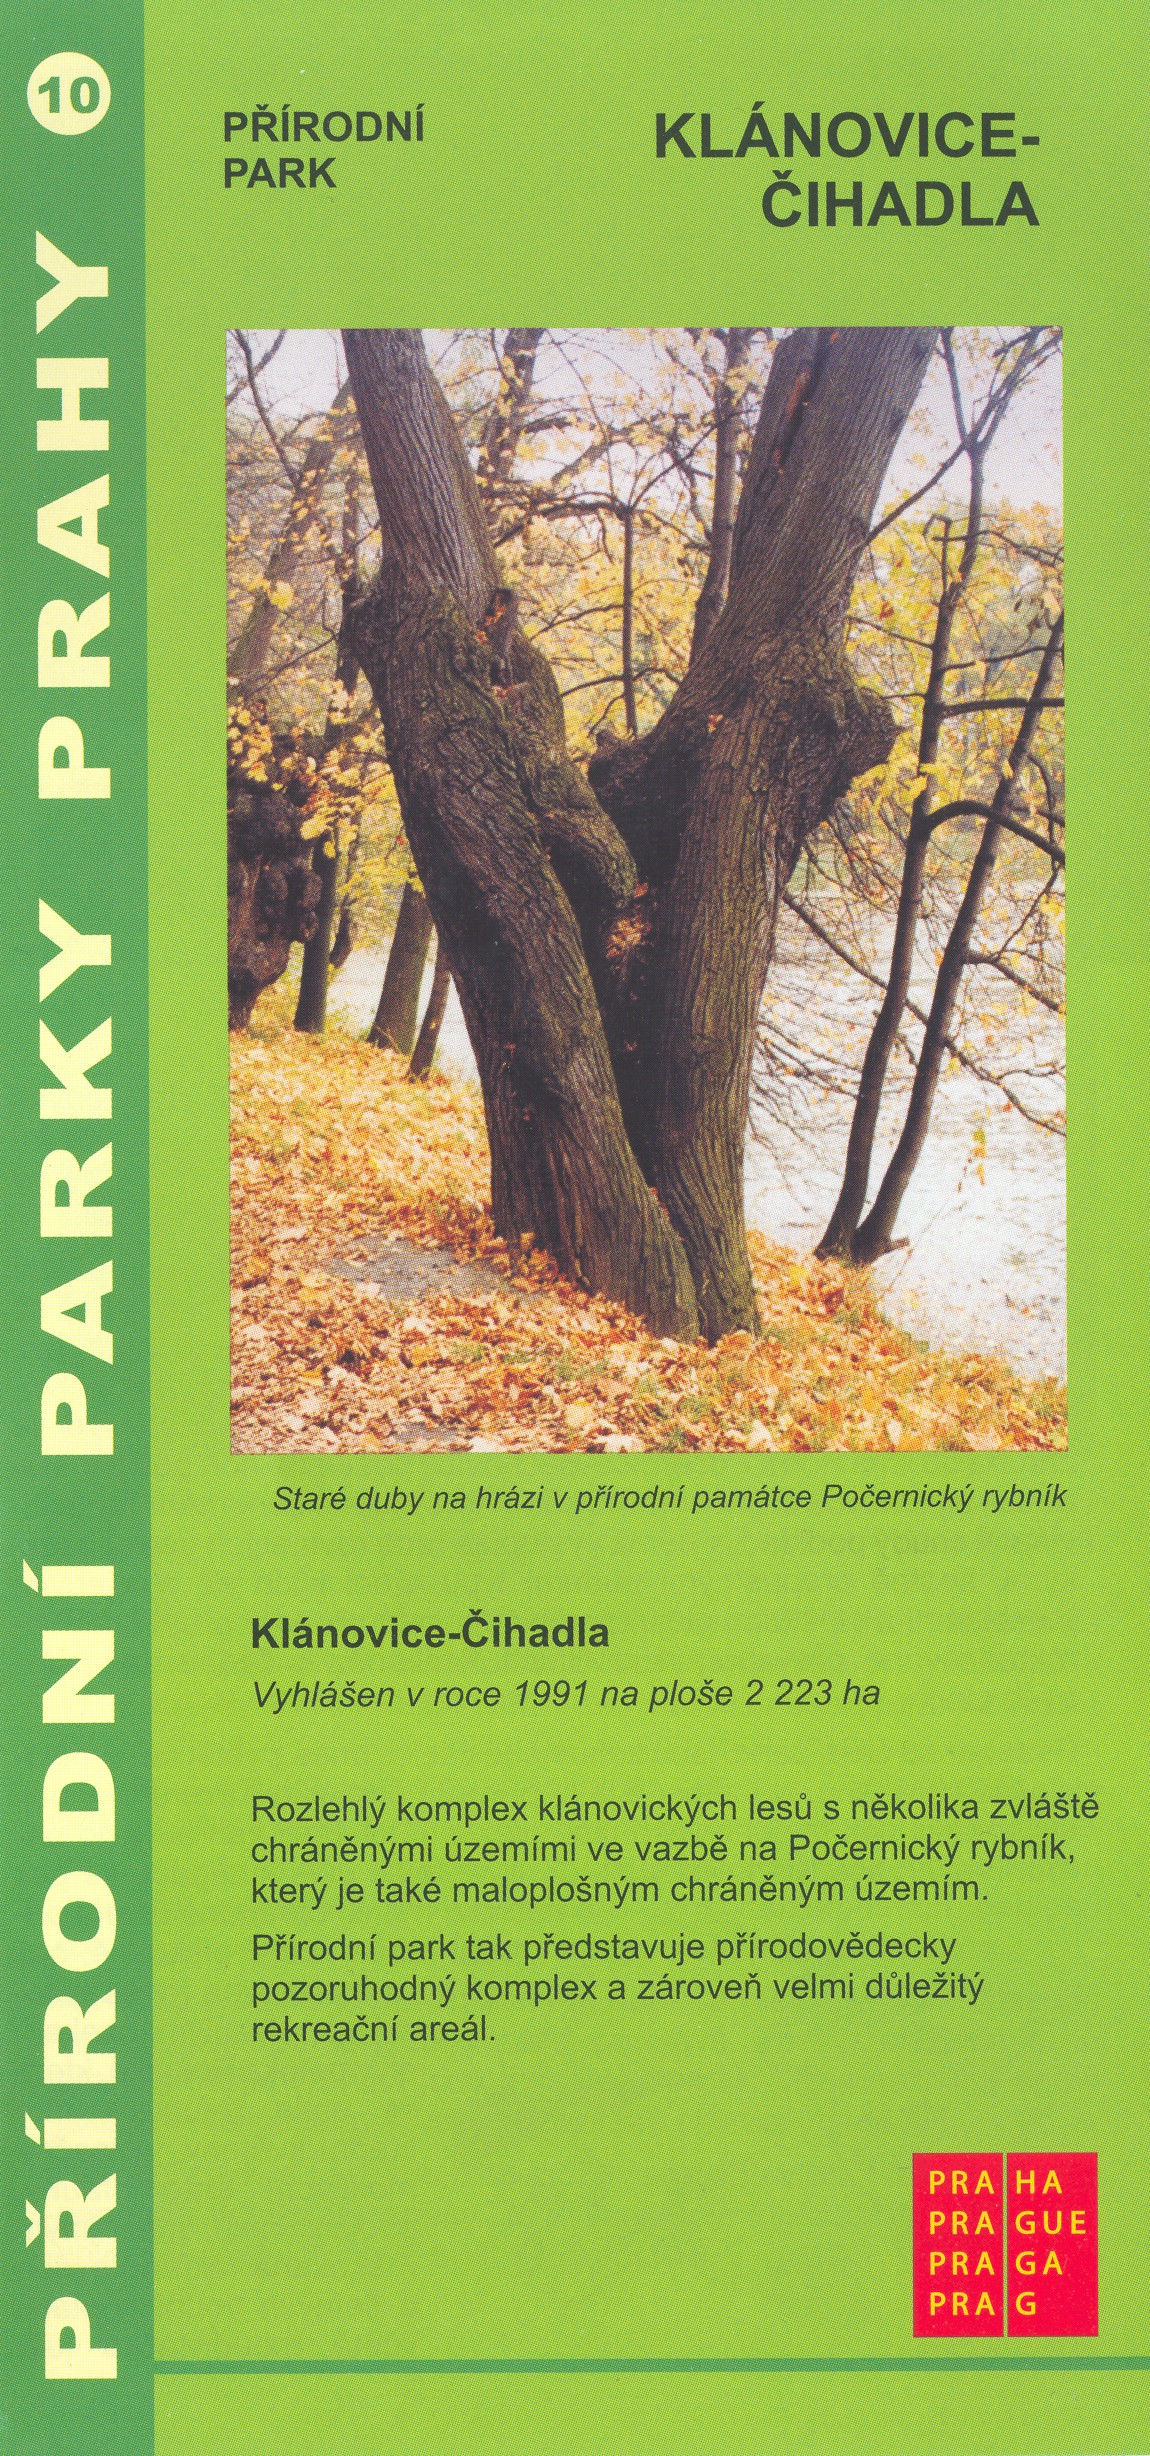 informační materiál Přírodní parky Prahy, č.10 - Klánovice-Čihadla